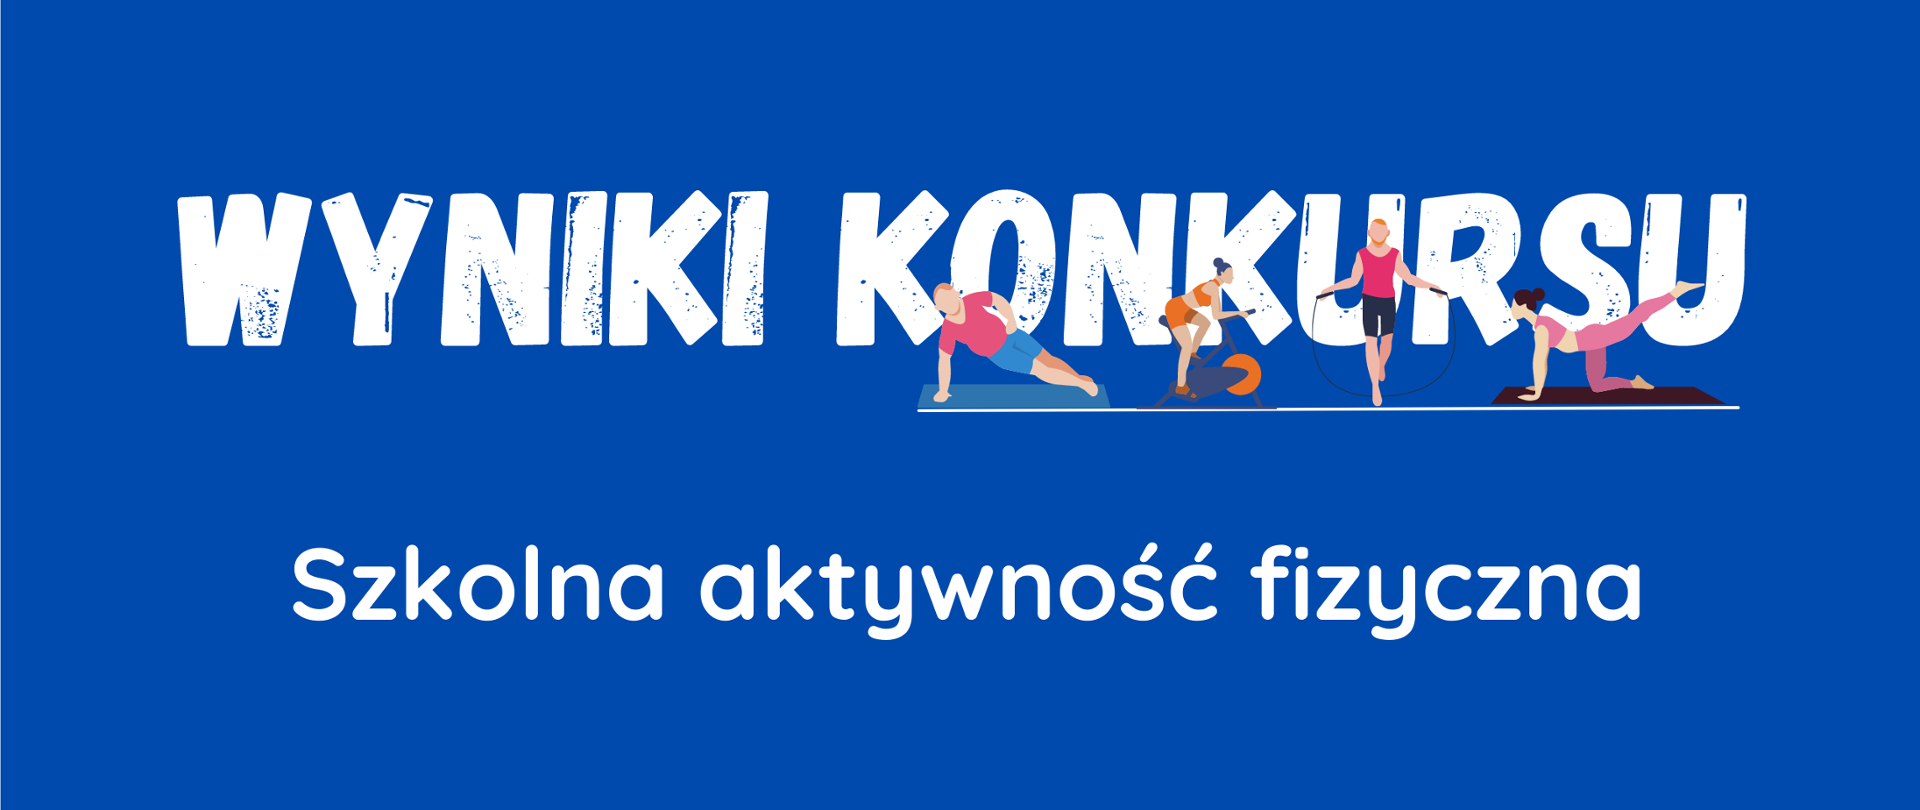 Na niebieskim tle napis w kolorze białym - Wyniki Konkursu Szkolna aktywność fizyczna. Pod napisem konkurs grafiki przedstawiające ćwiczące osoby.